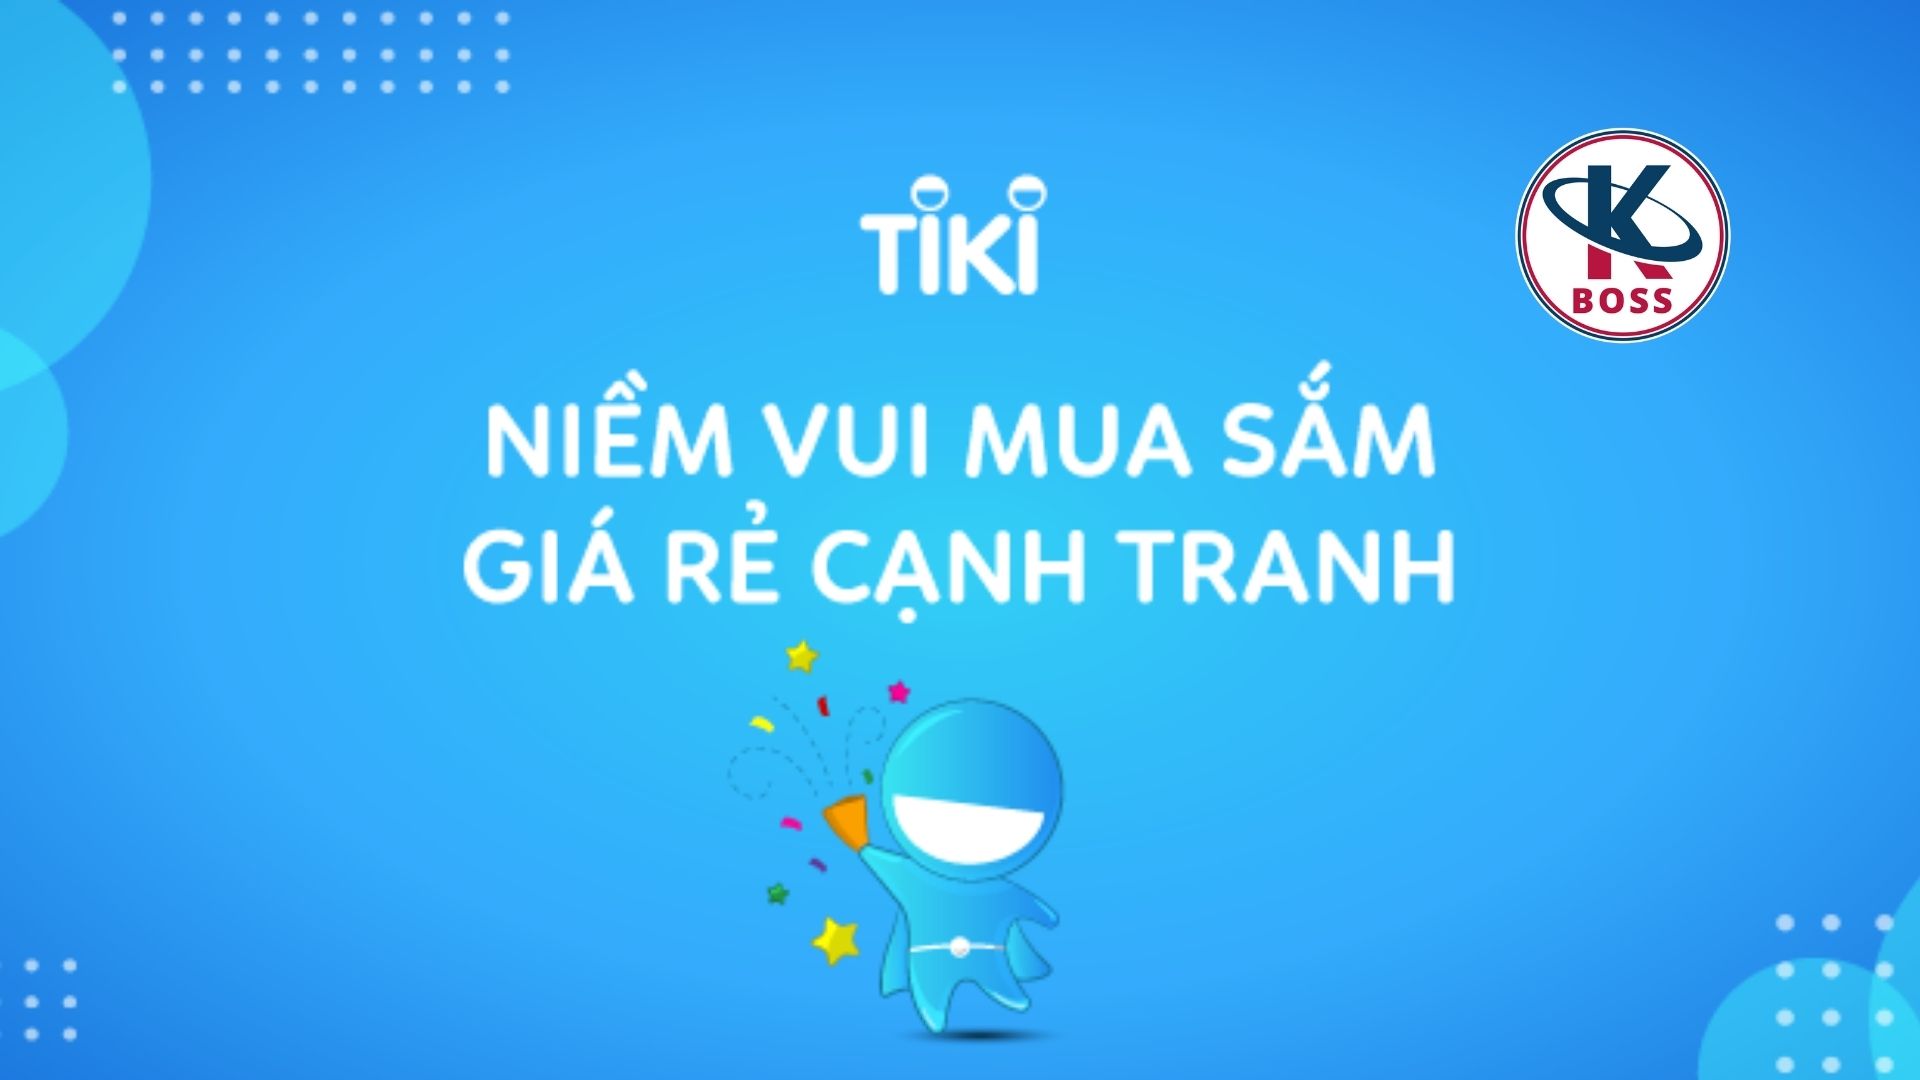 Sử dụng Tiki App như thế nào?